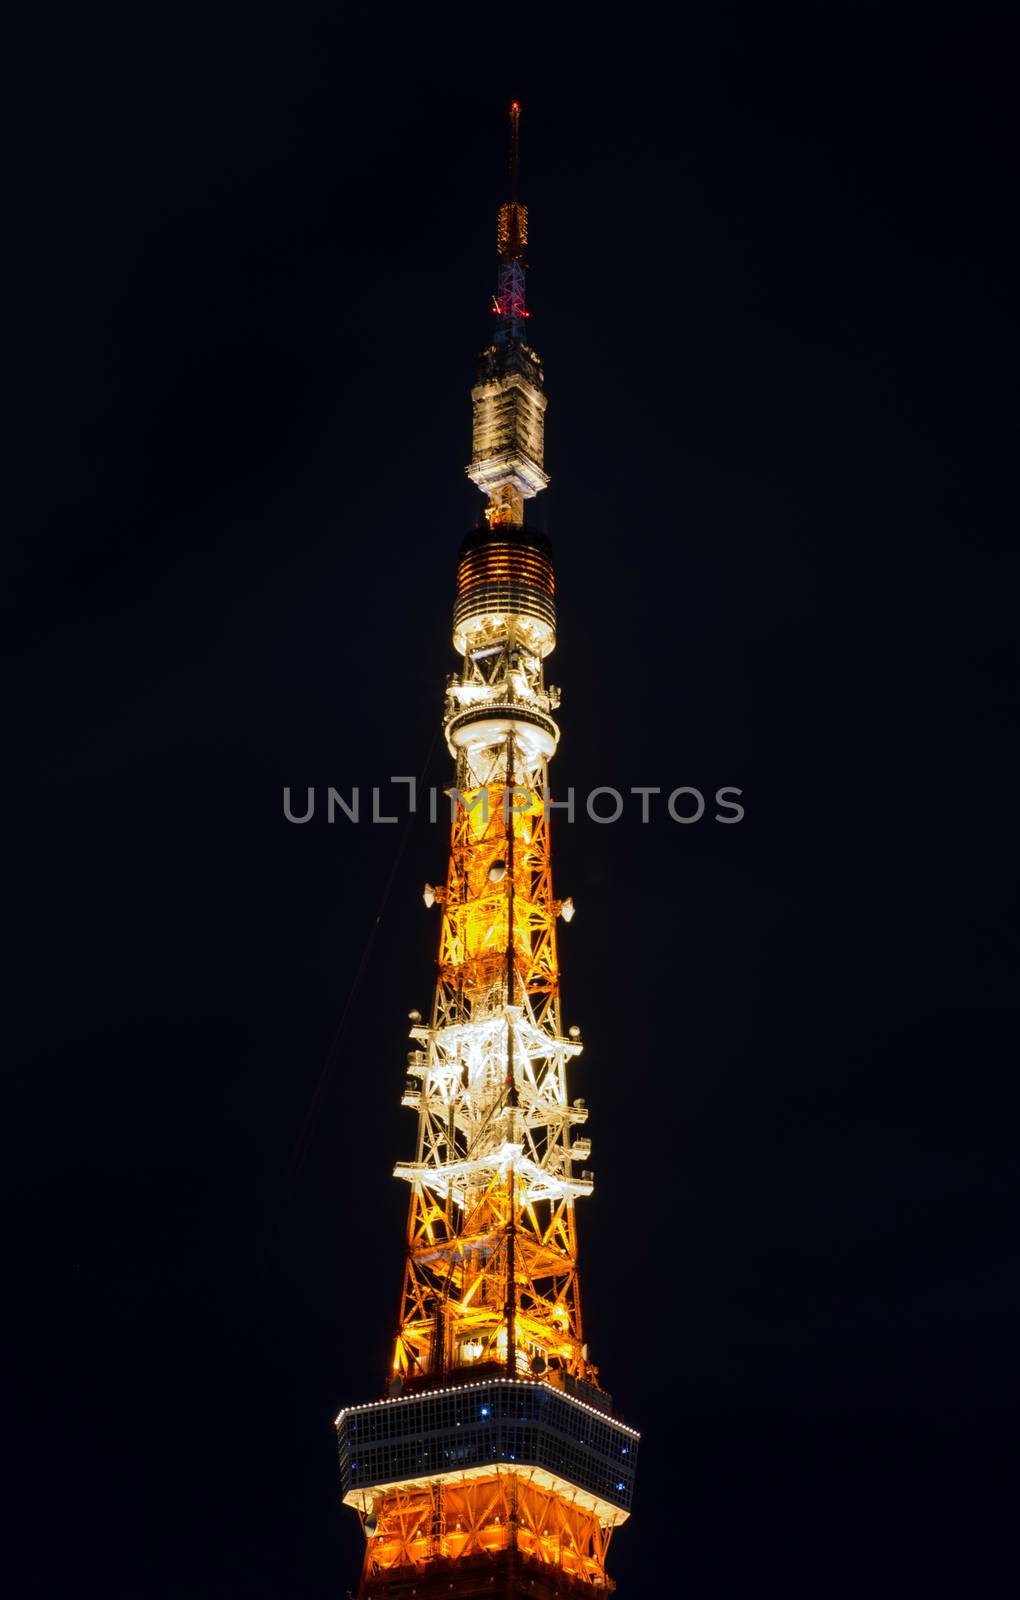 Tokyo Tower by siraanamwong